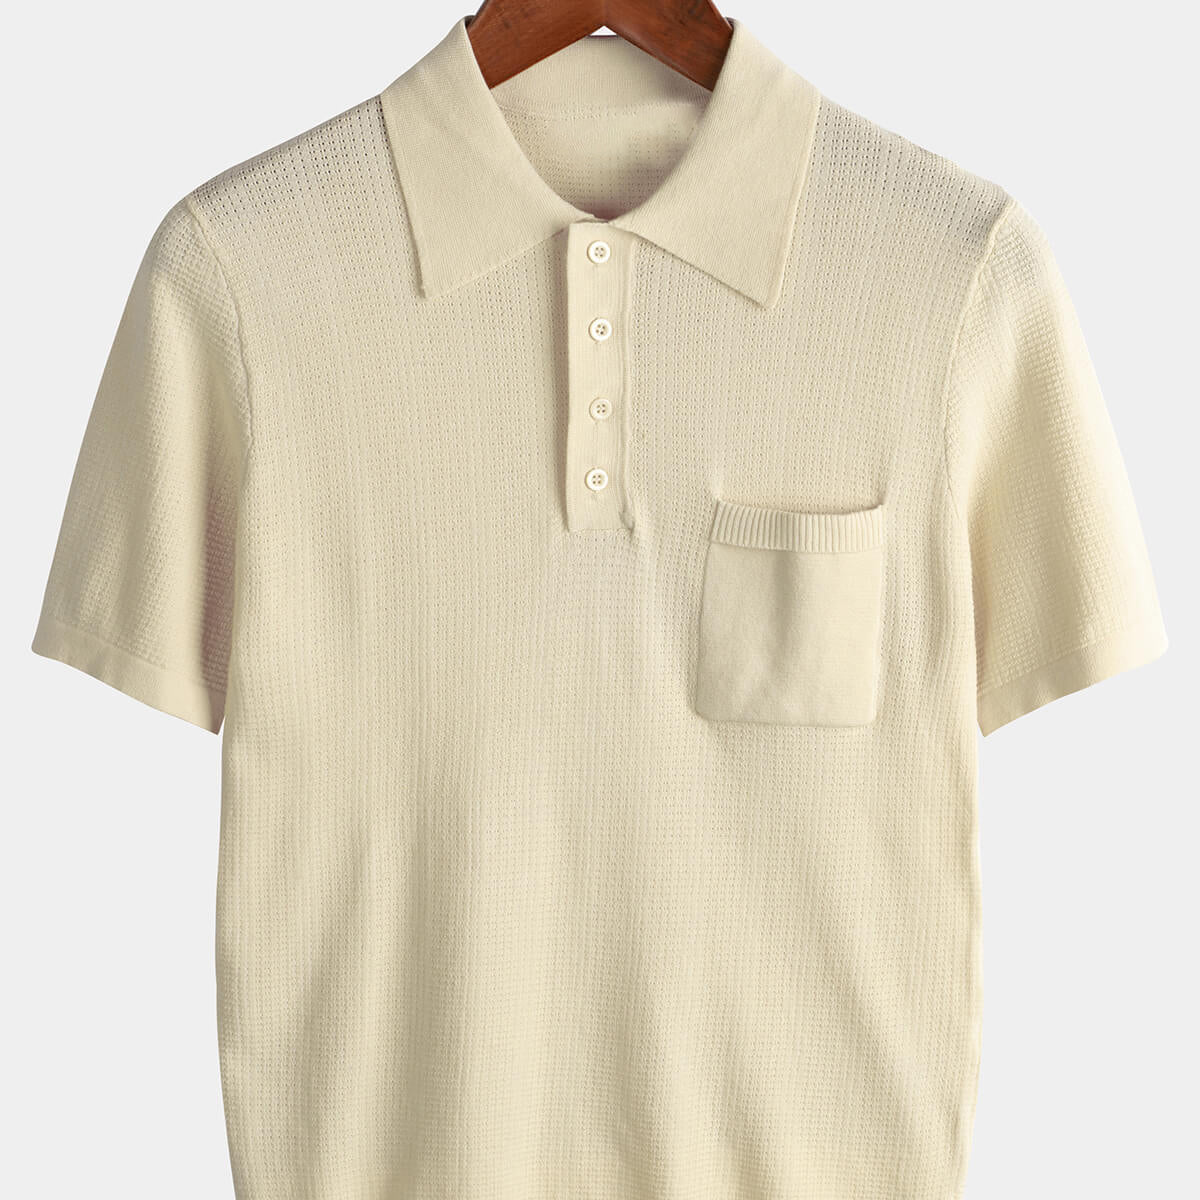 Polo de golf côtelé classique à manches courtes pour hommes, tricot décontracté avec poche